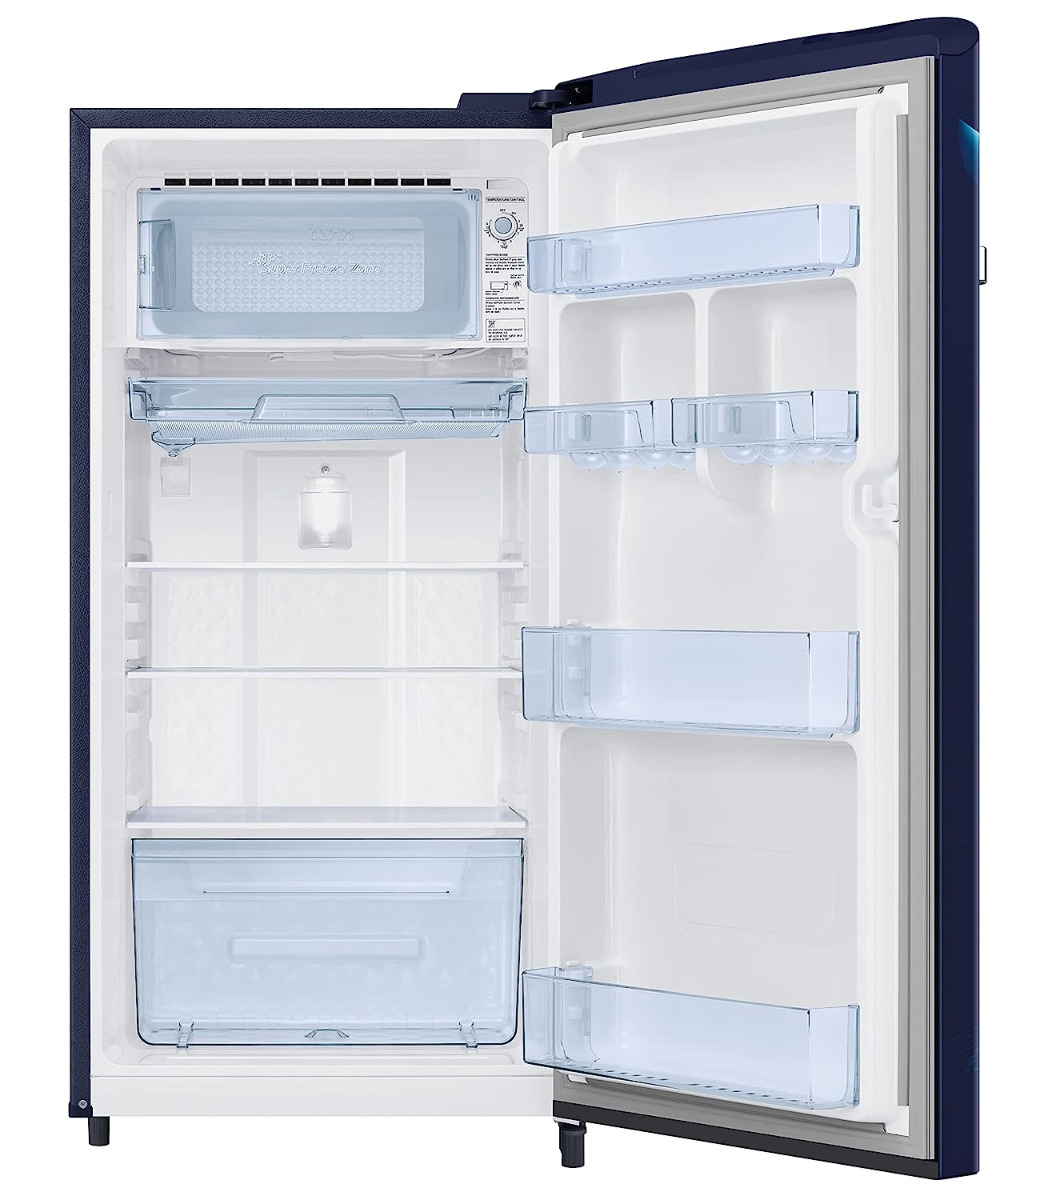 Samsung 189 L 5 Star Direct Cool Single Door Refrigerator (RR21C2G25UZ,Midnight Blossom Blue)-16024